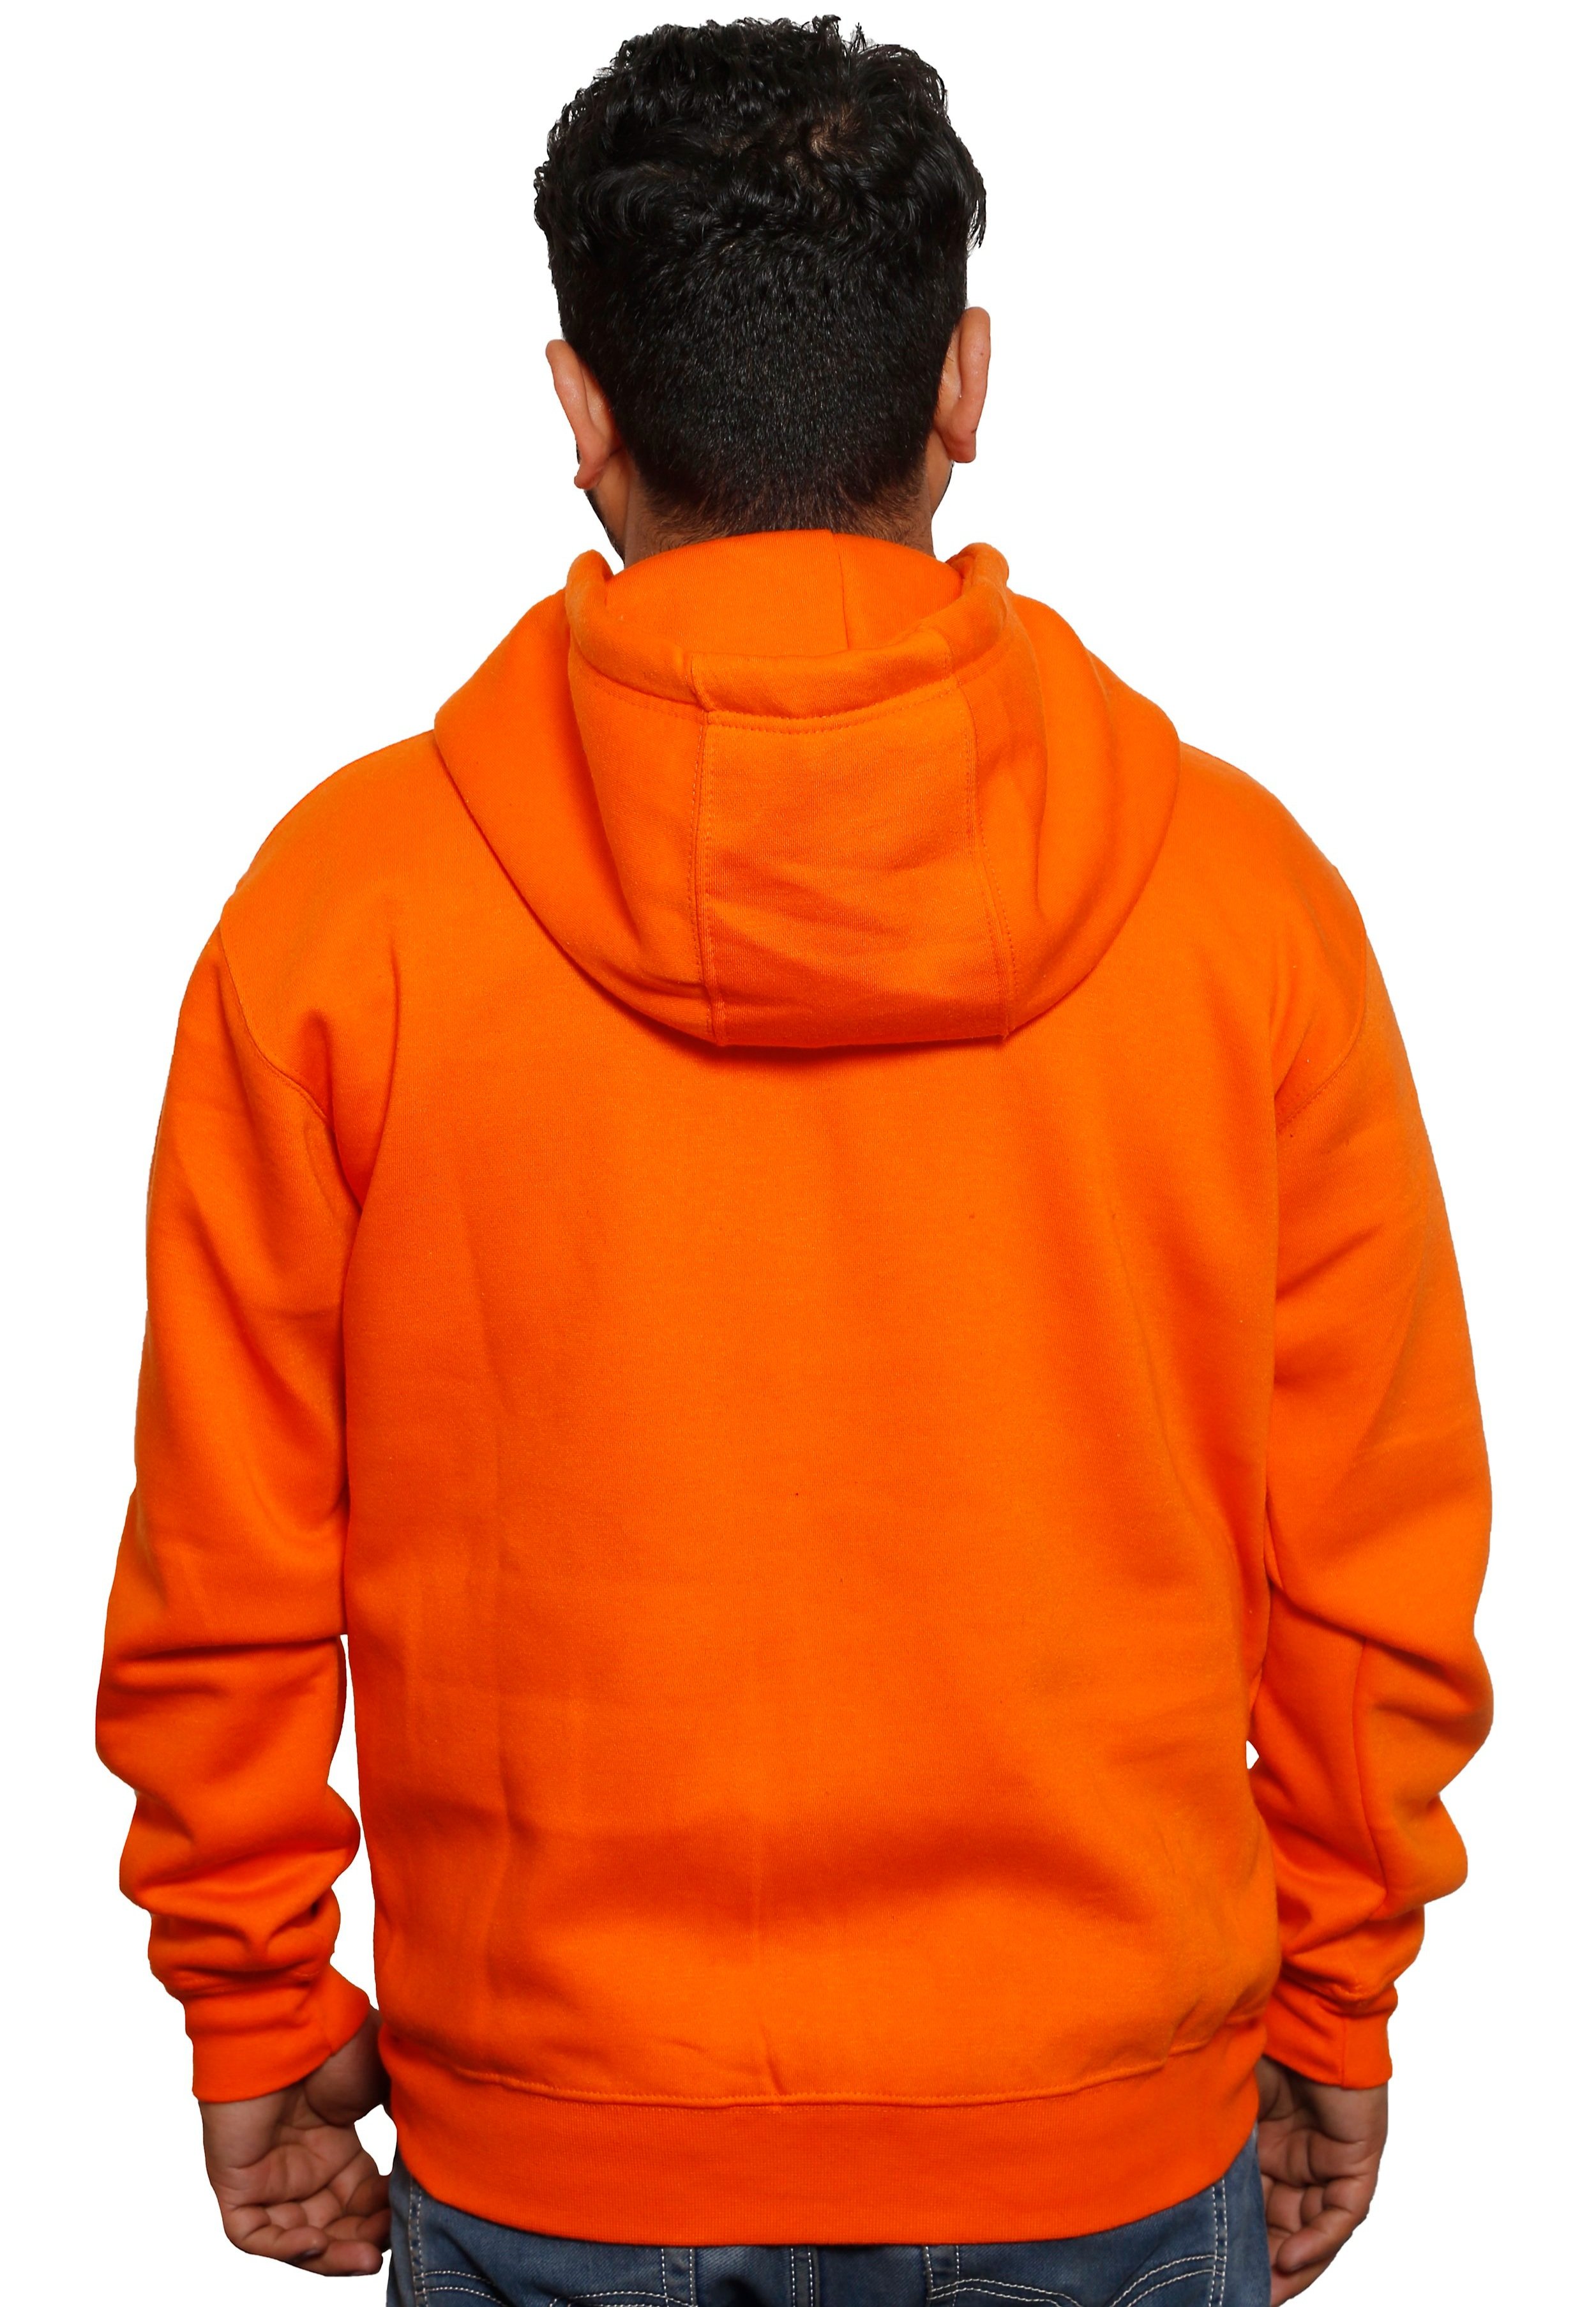 orange+zipper+1+%282%29.jpg